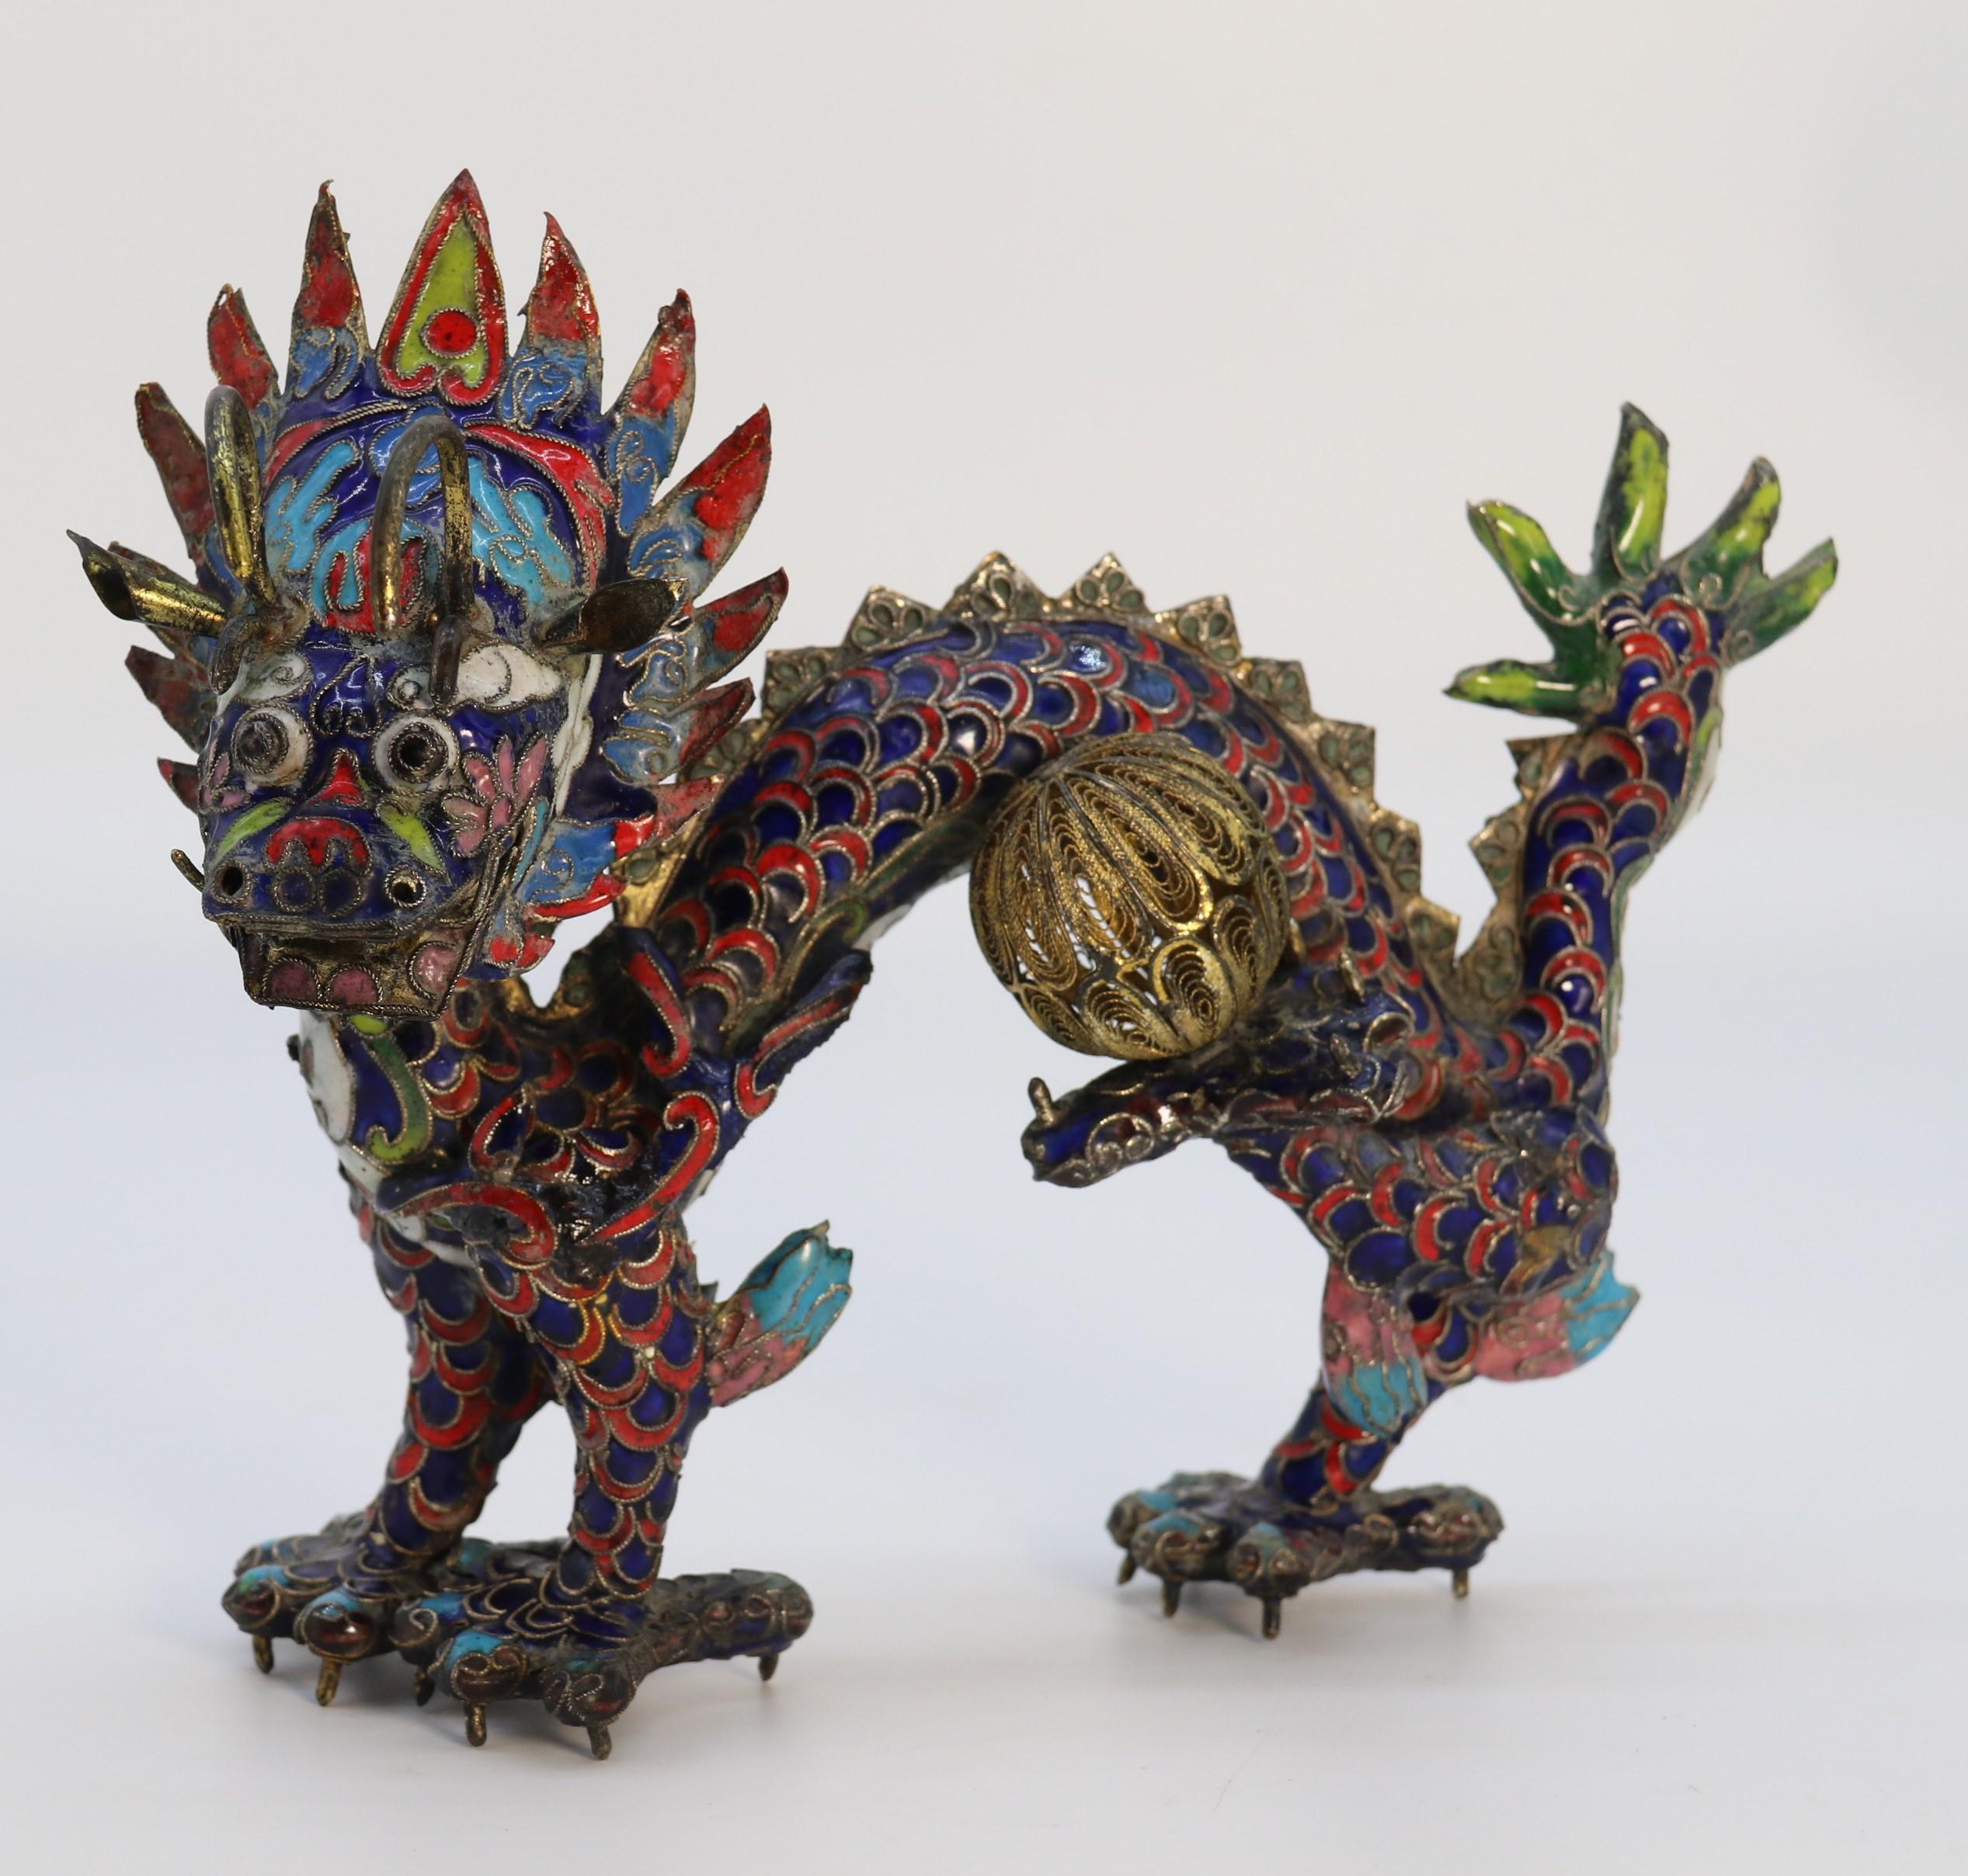 Eine chinesische dekorative Cloisonné-Skulptur aus dem frühen 20. Jahrhundert, die einen Drachen mit fünf Klauen darstellt, der eine Kugel ergreift.

Dieser helle und ungewöhnliche Drache ist ein chinesisches Kunstwerk und stammt aus der Zeit um